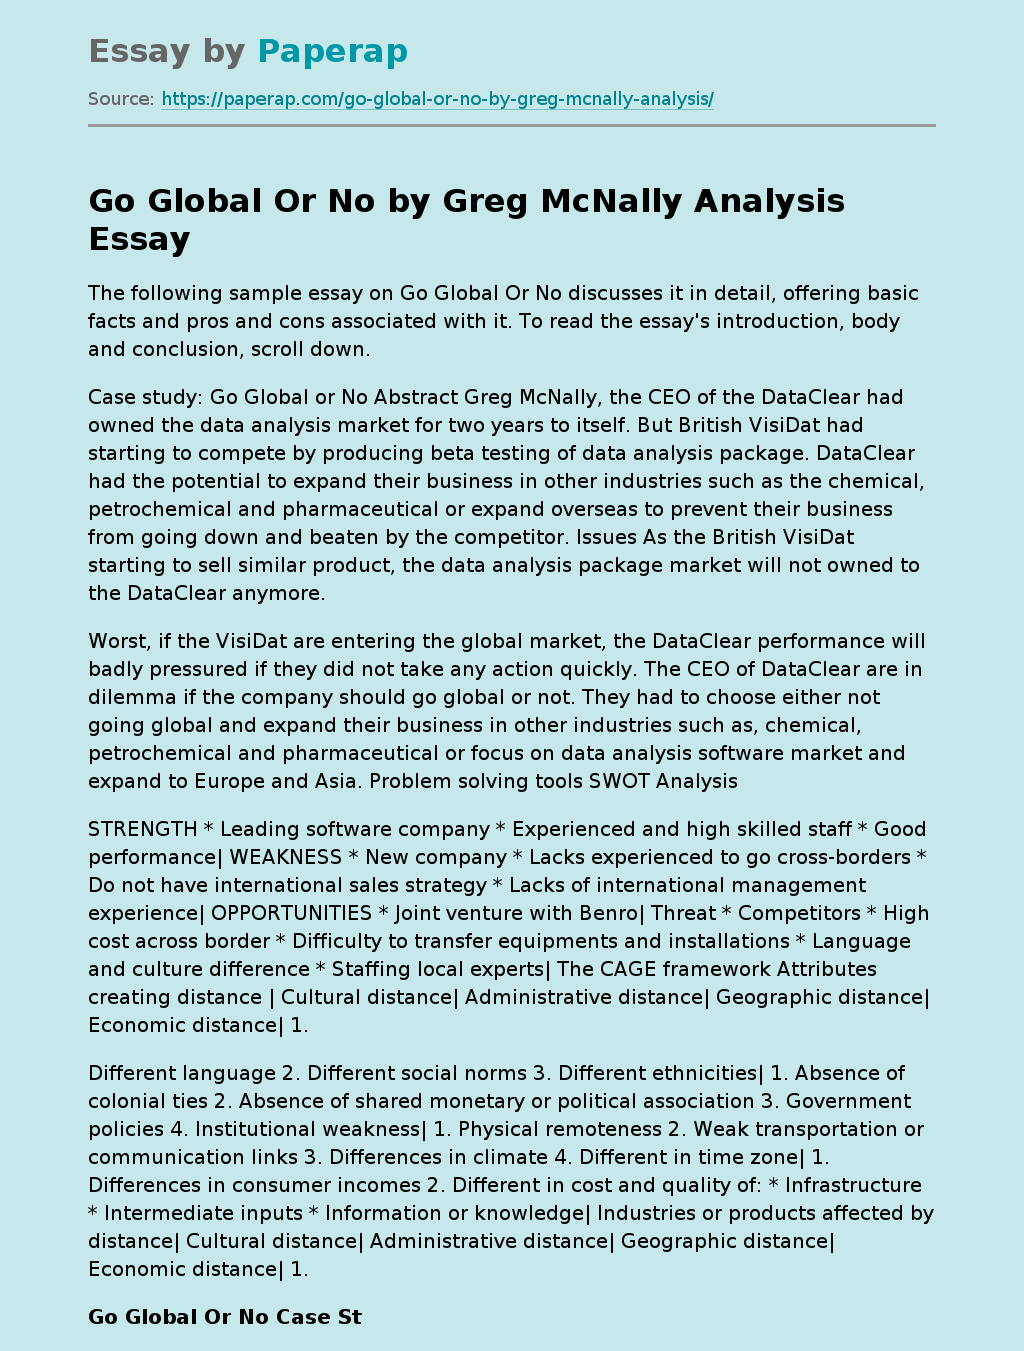 Go Global Or No by Greg McNally Analysis